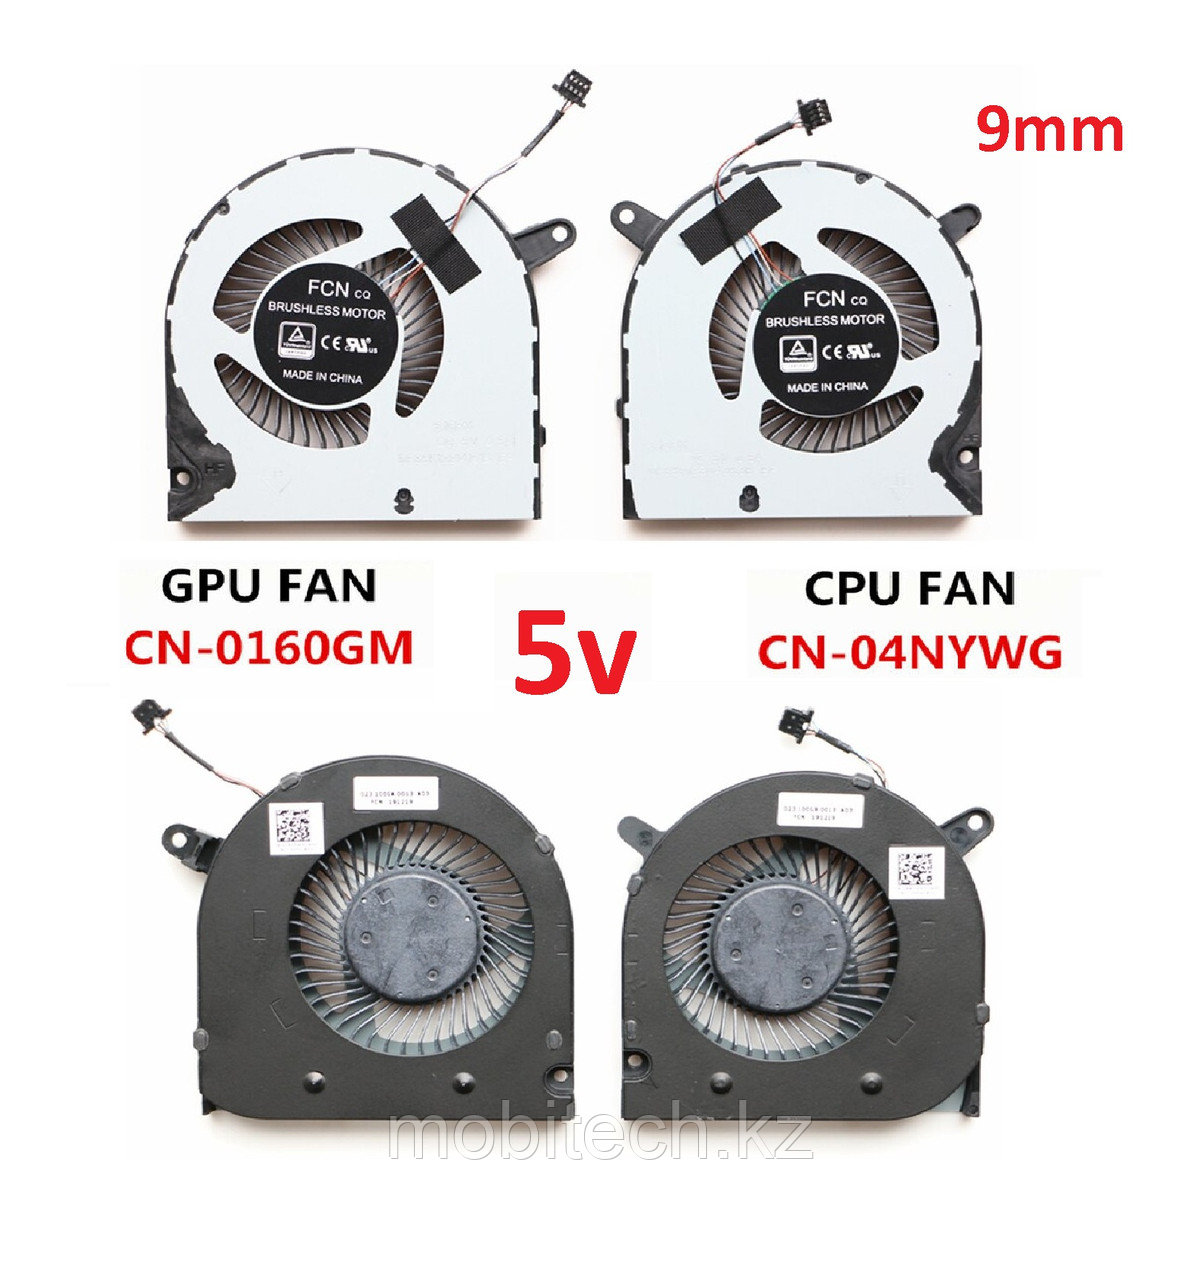 Системы охлаждения вентиляторы Dell Gaming G5 15 5505  G3 15 3500 G5 SE 5505 9mm 4-pin Кулер FAN (L-R пара)